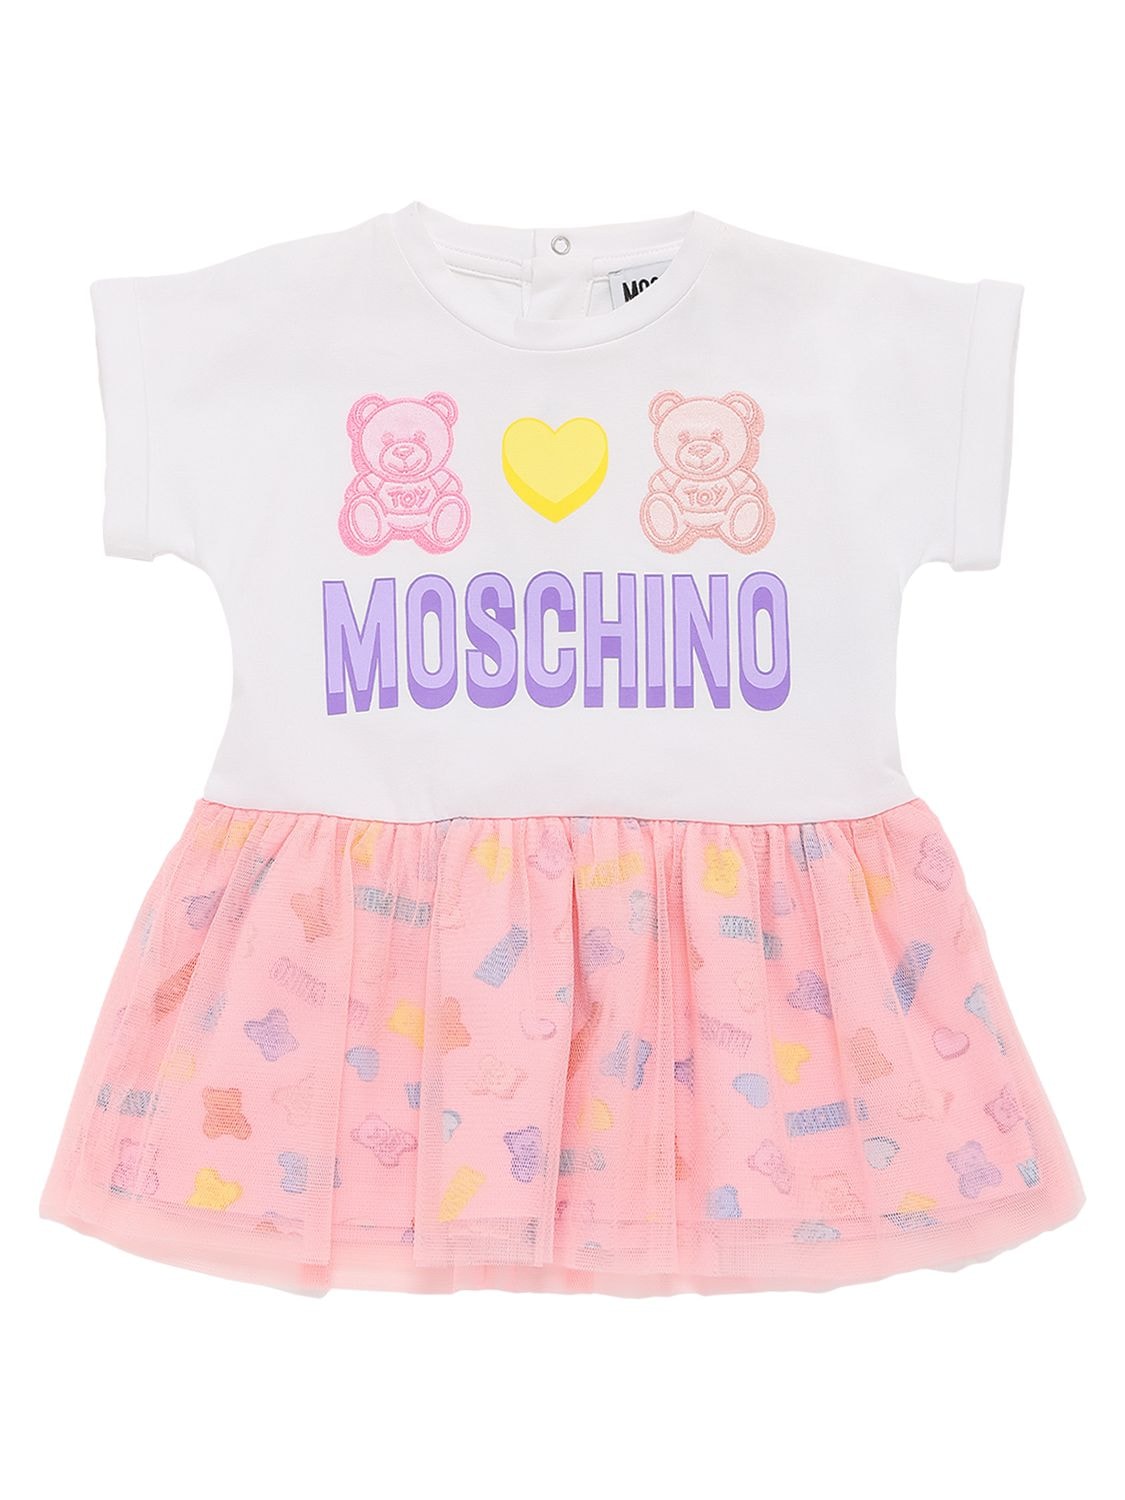 Moschino Kids' Gummy Bears Logo棉&薄纱连衣裙 In White,pink